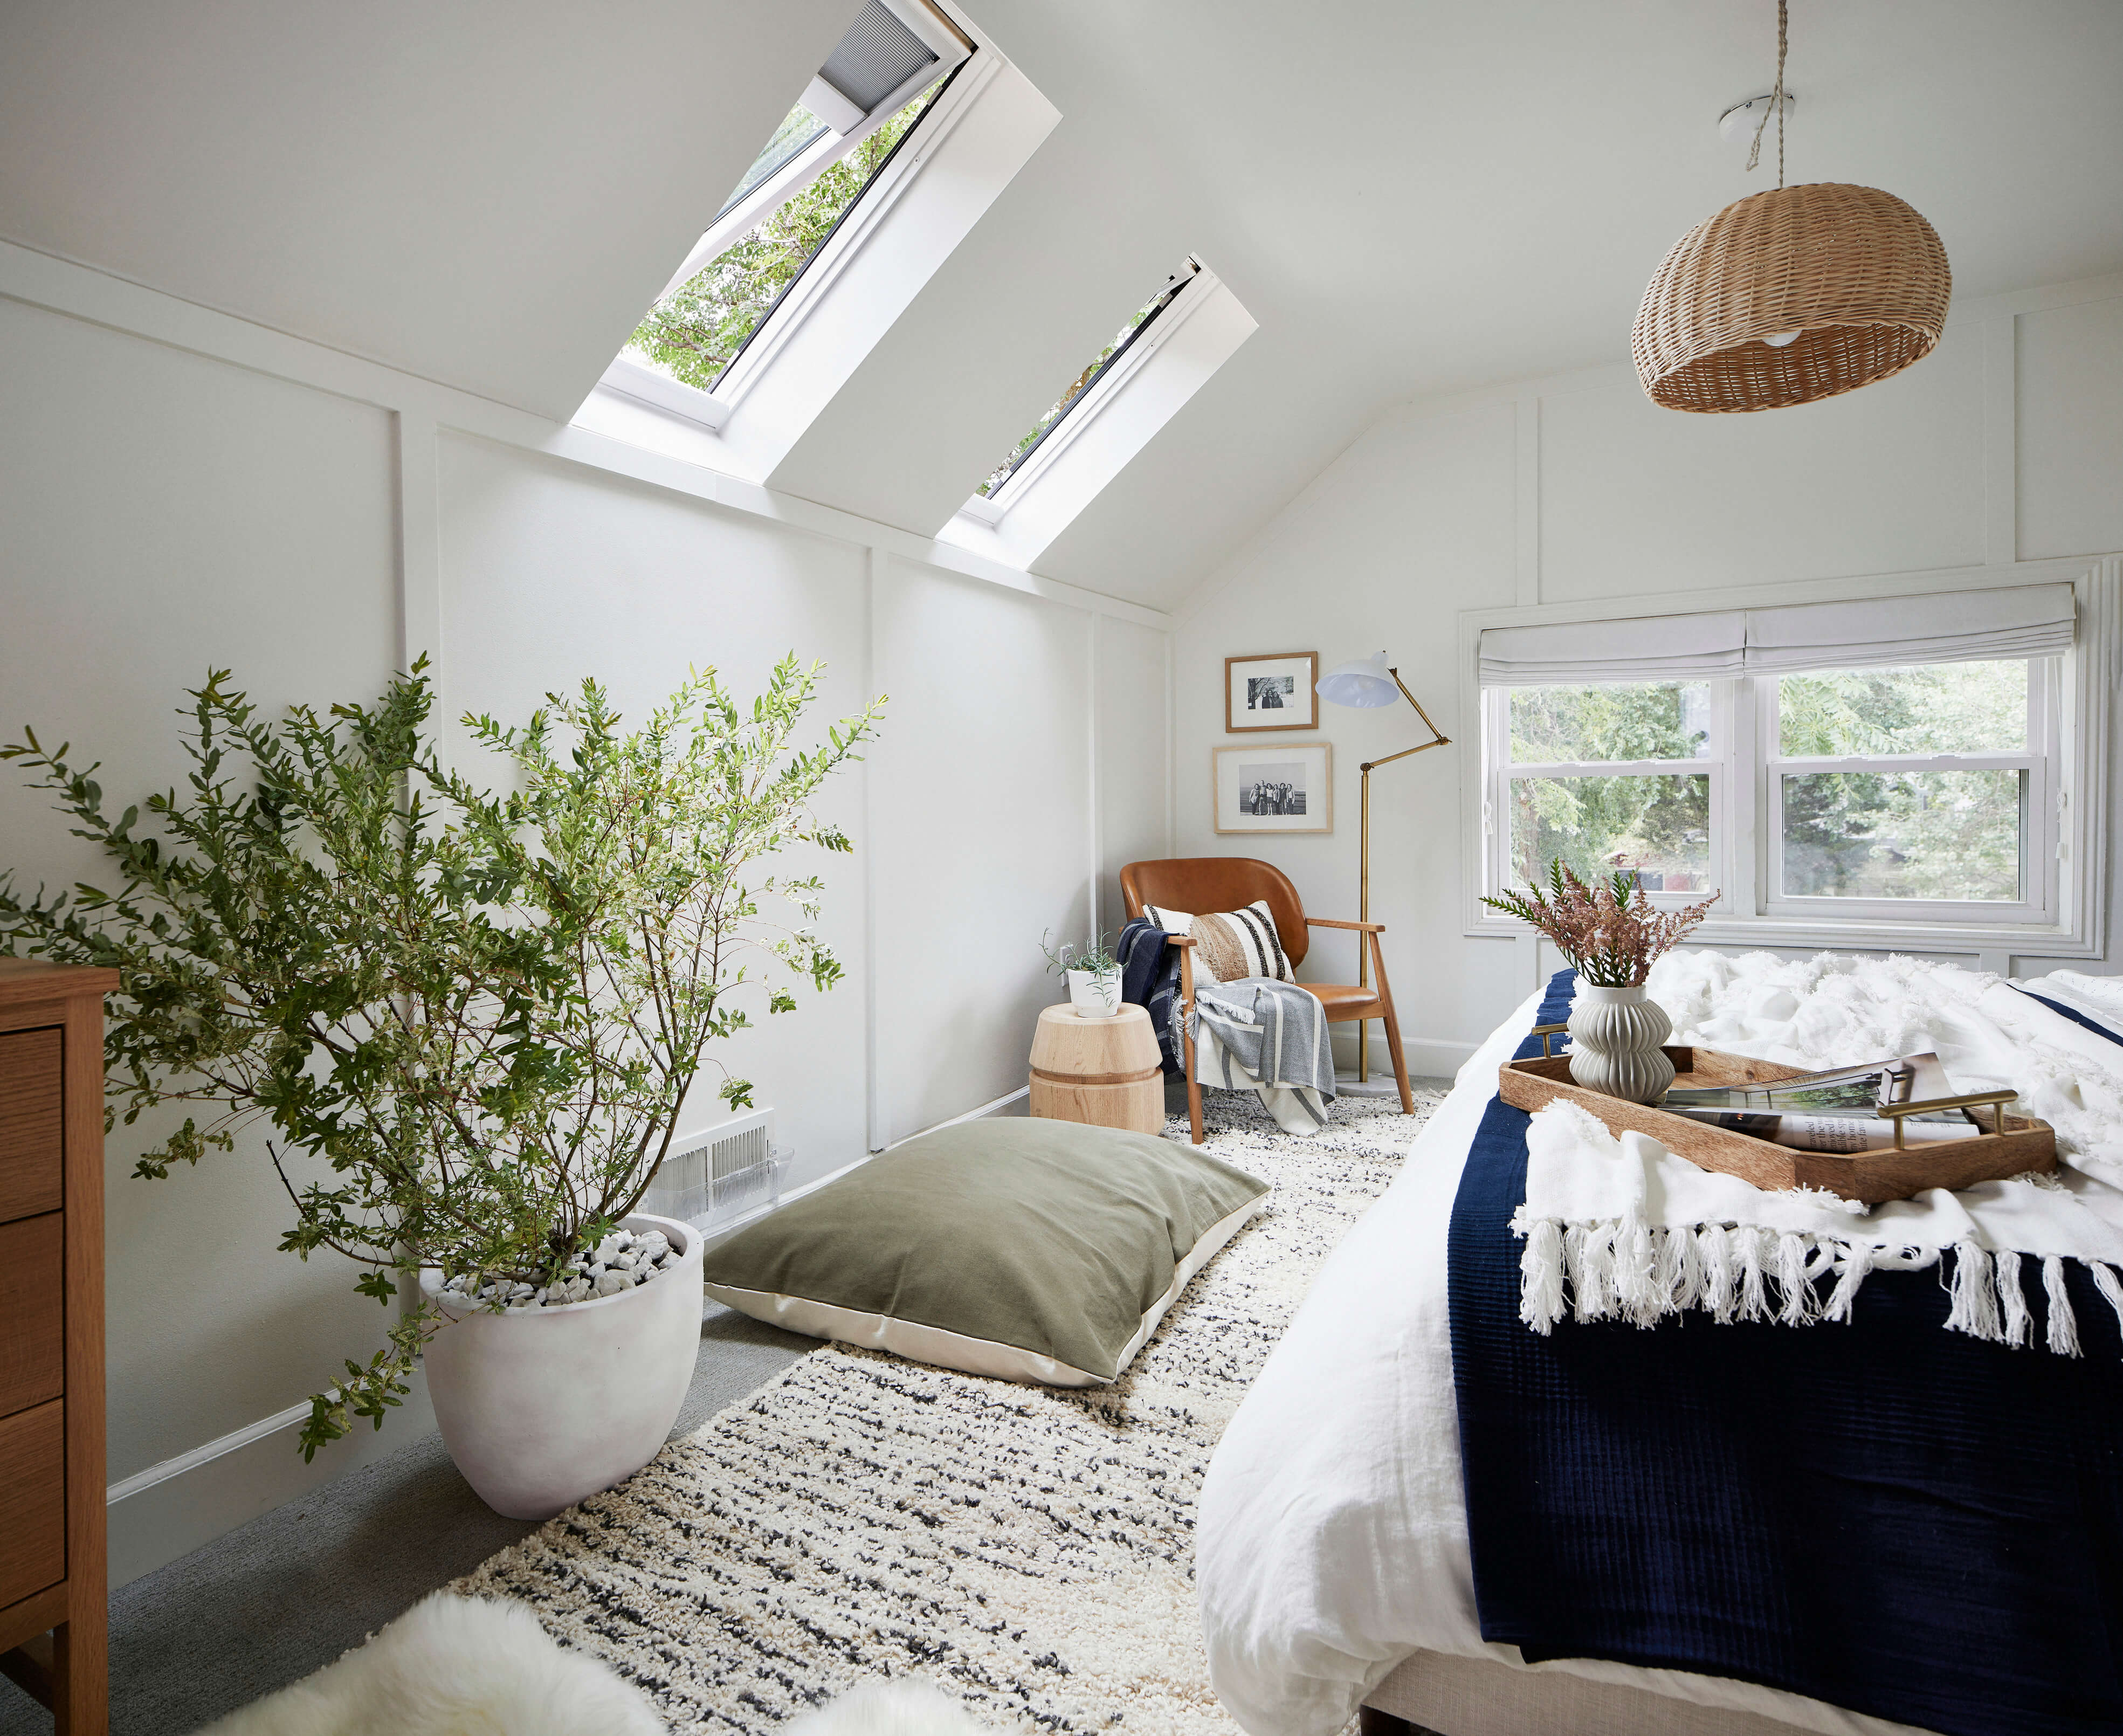 Gemütliches Schlafzimmer mit VELUX Dachflächenfenstern, moderner Einrichtung und einer grünen Pflanze.